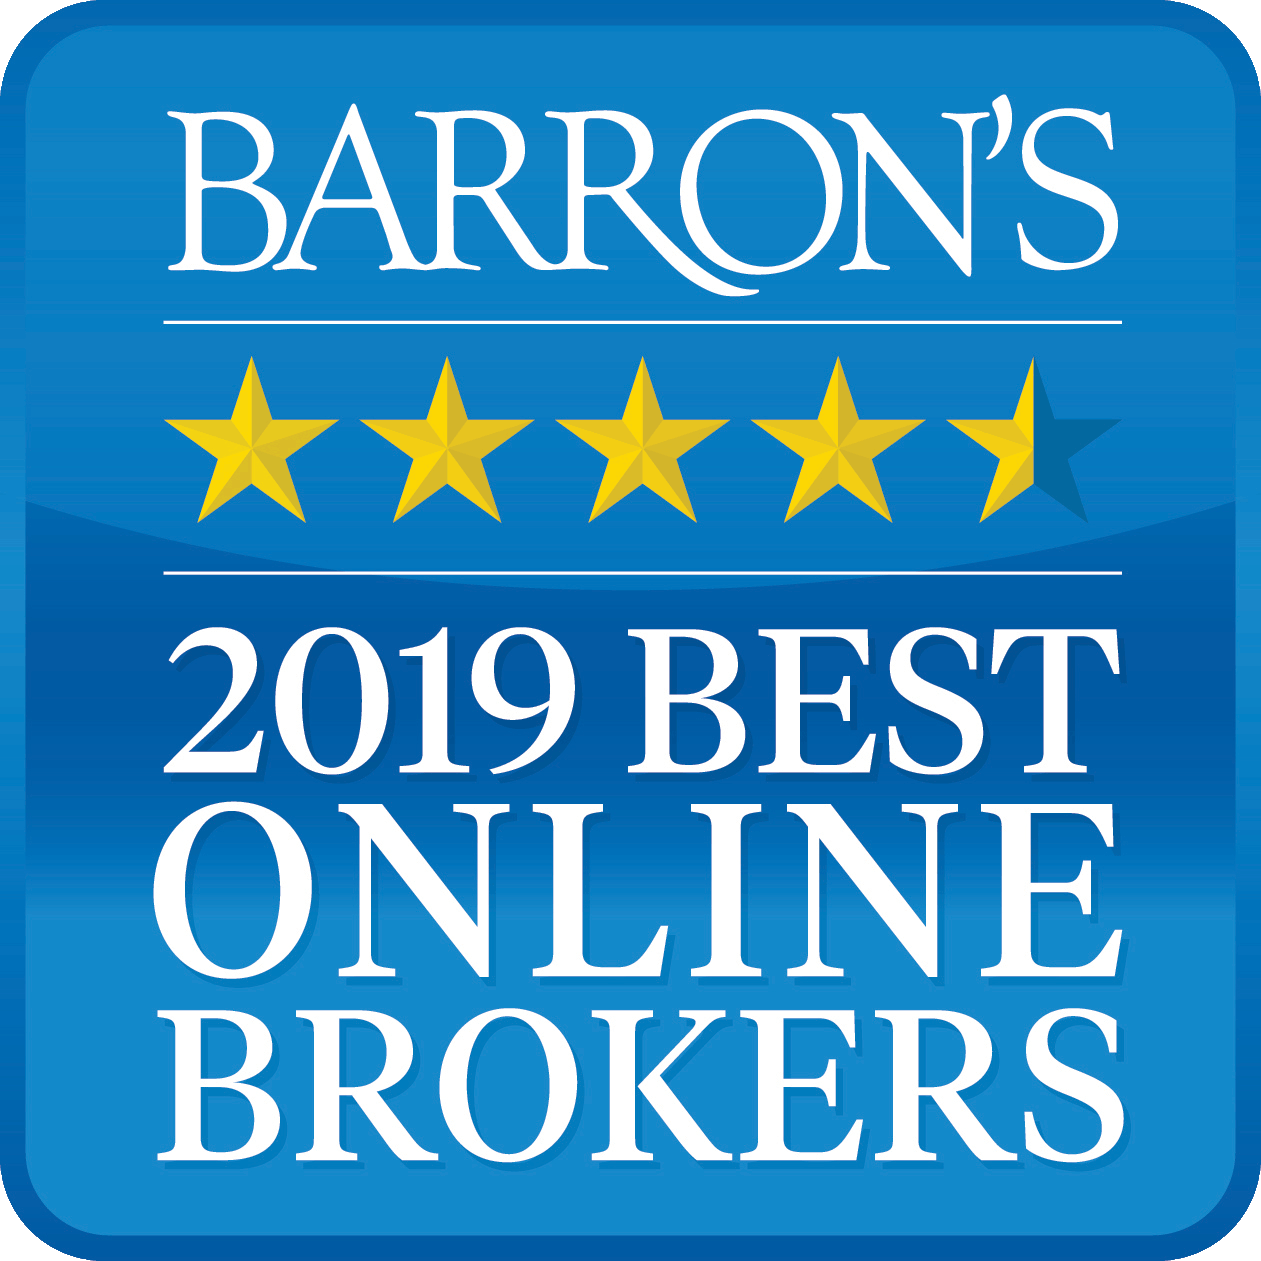 Interactive Brokers was Rated #1 - Best Online Broker - 2019 by Barron's